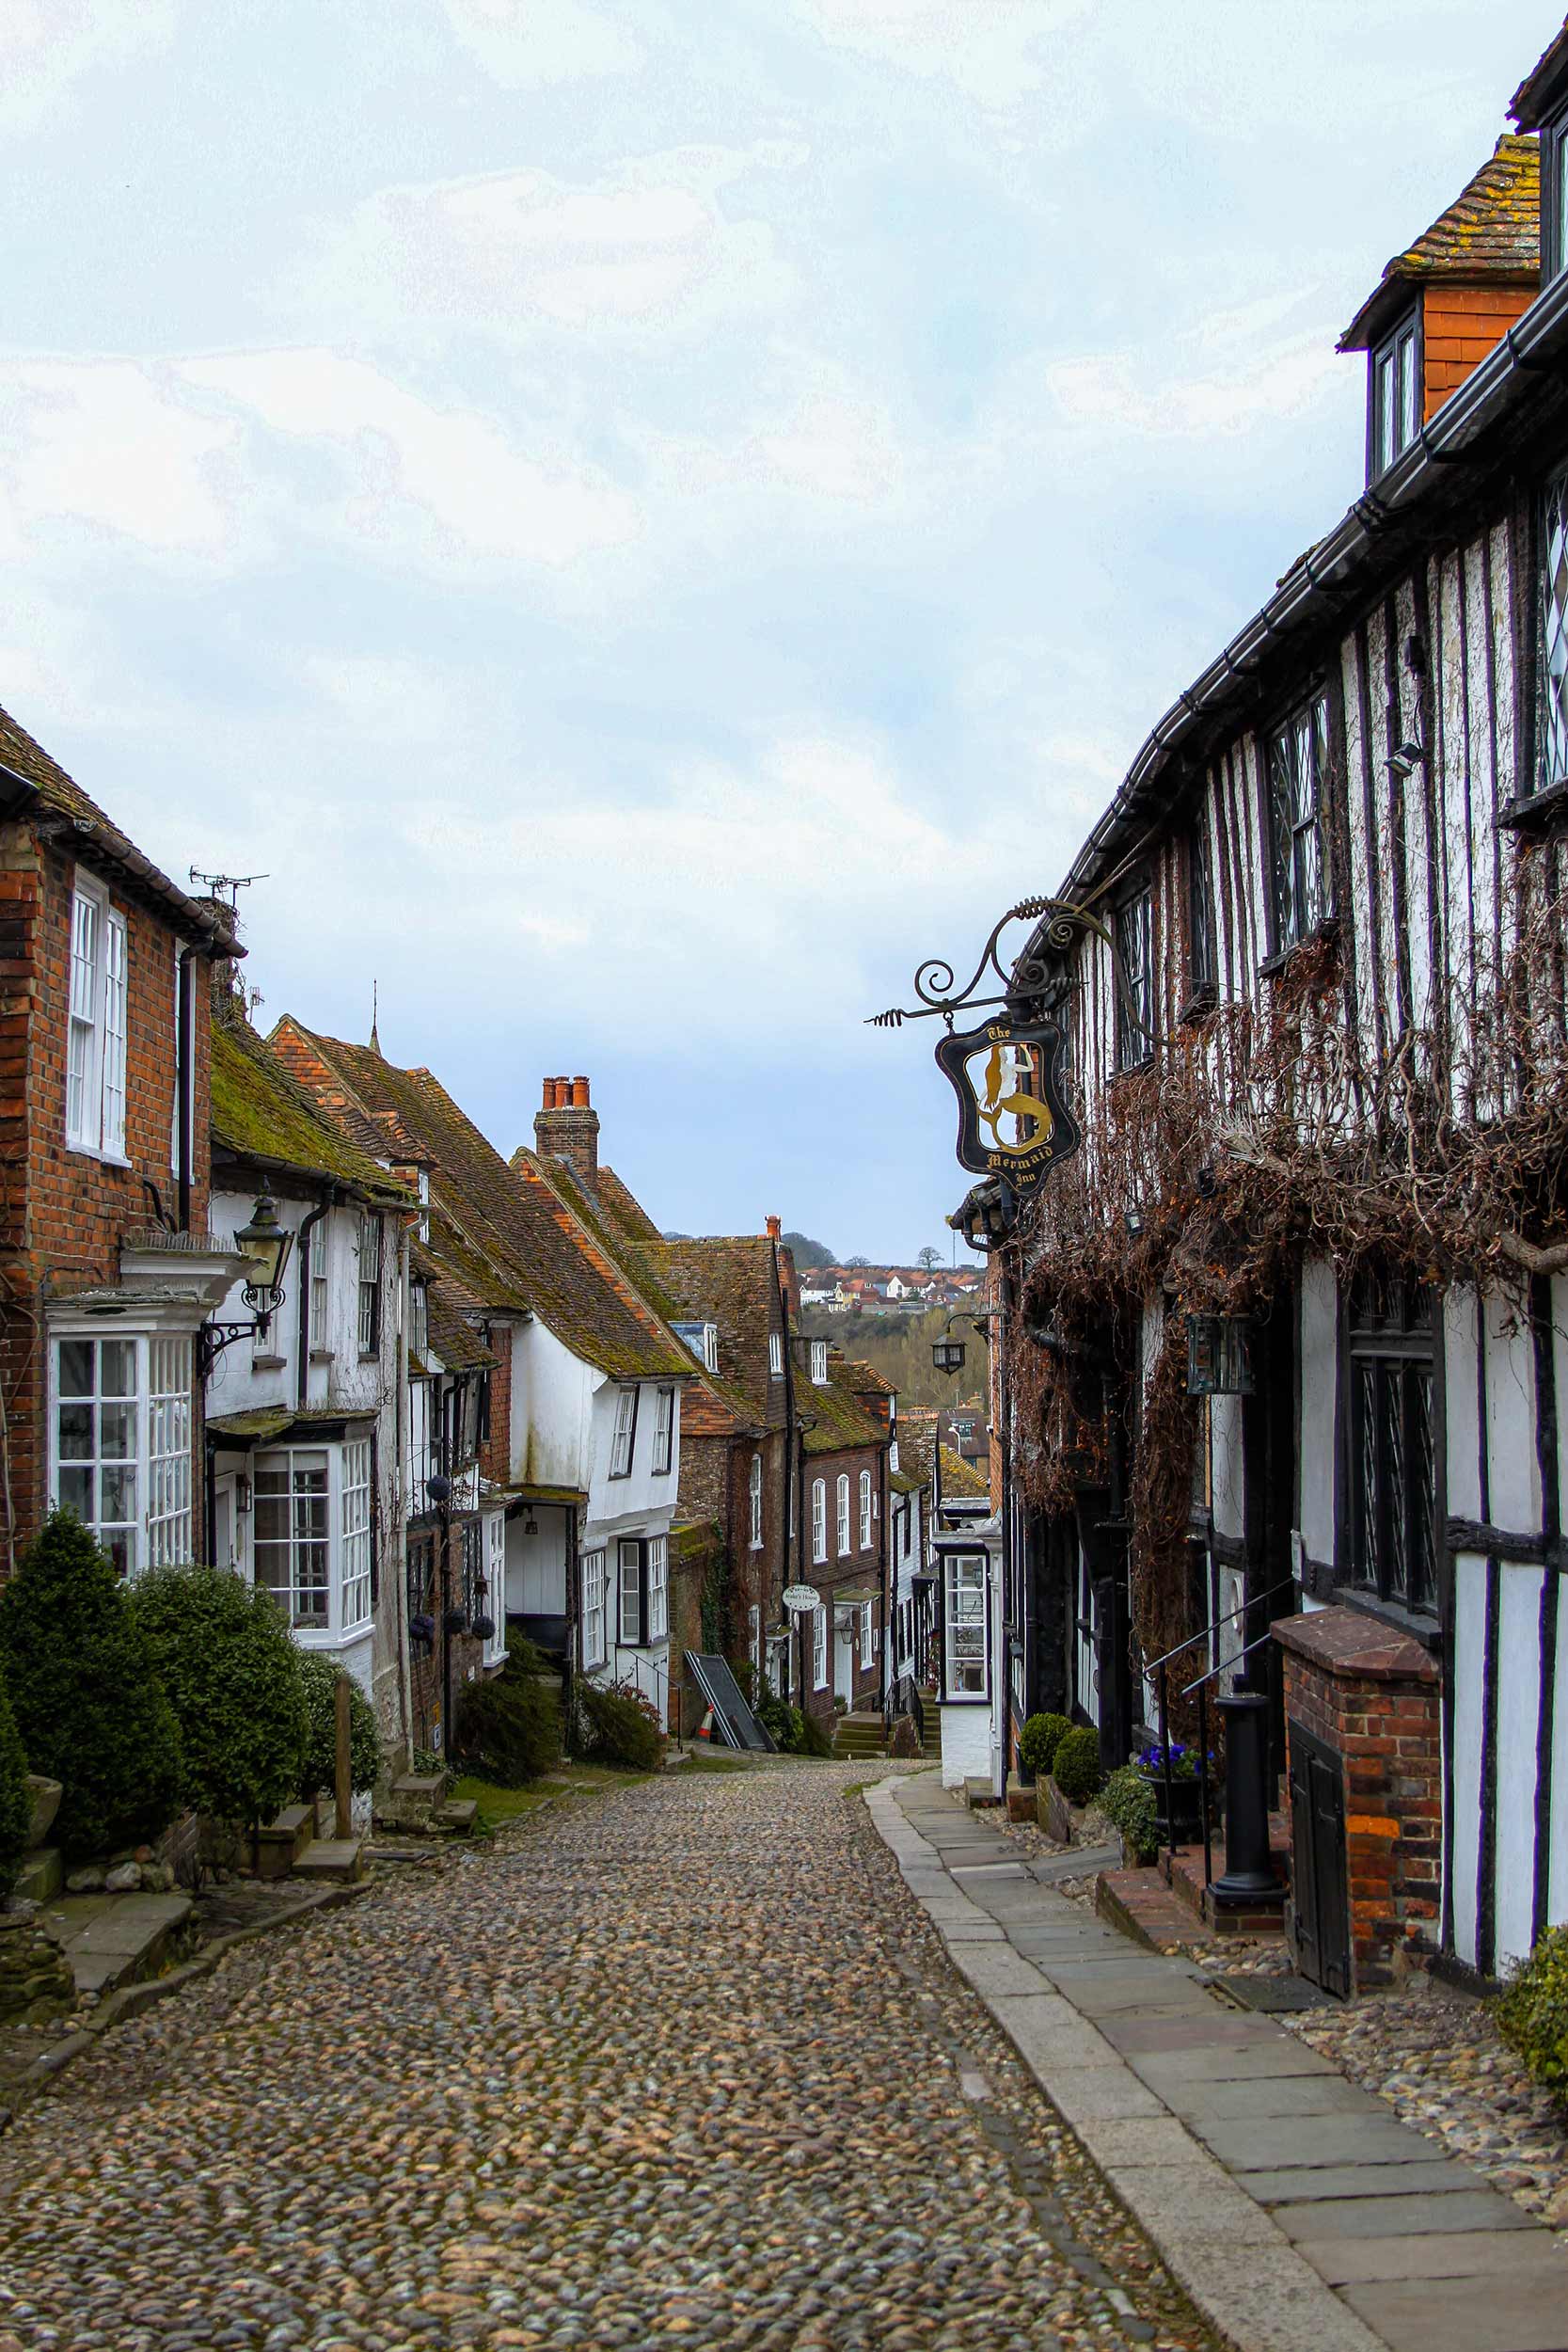 A street in Rye